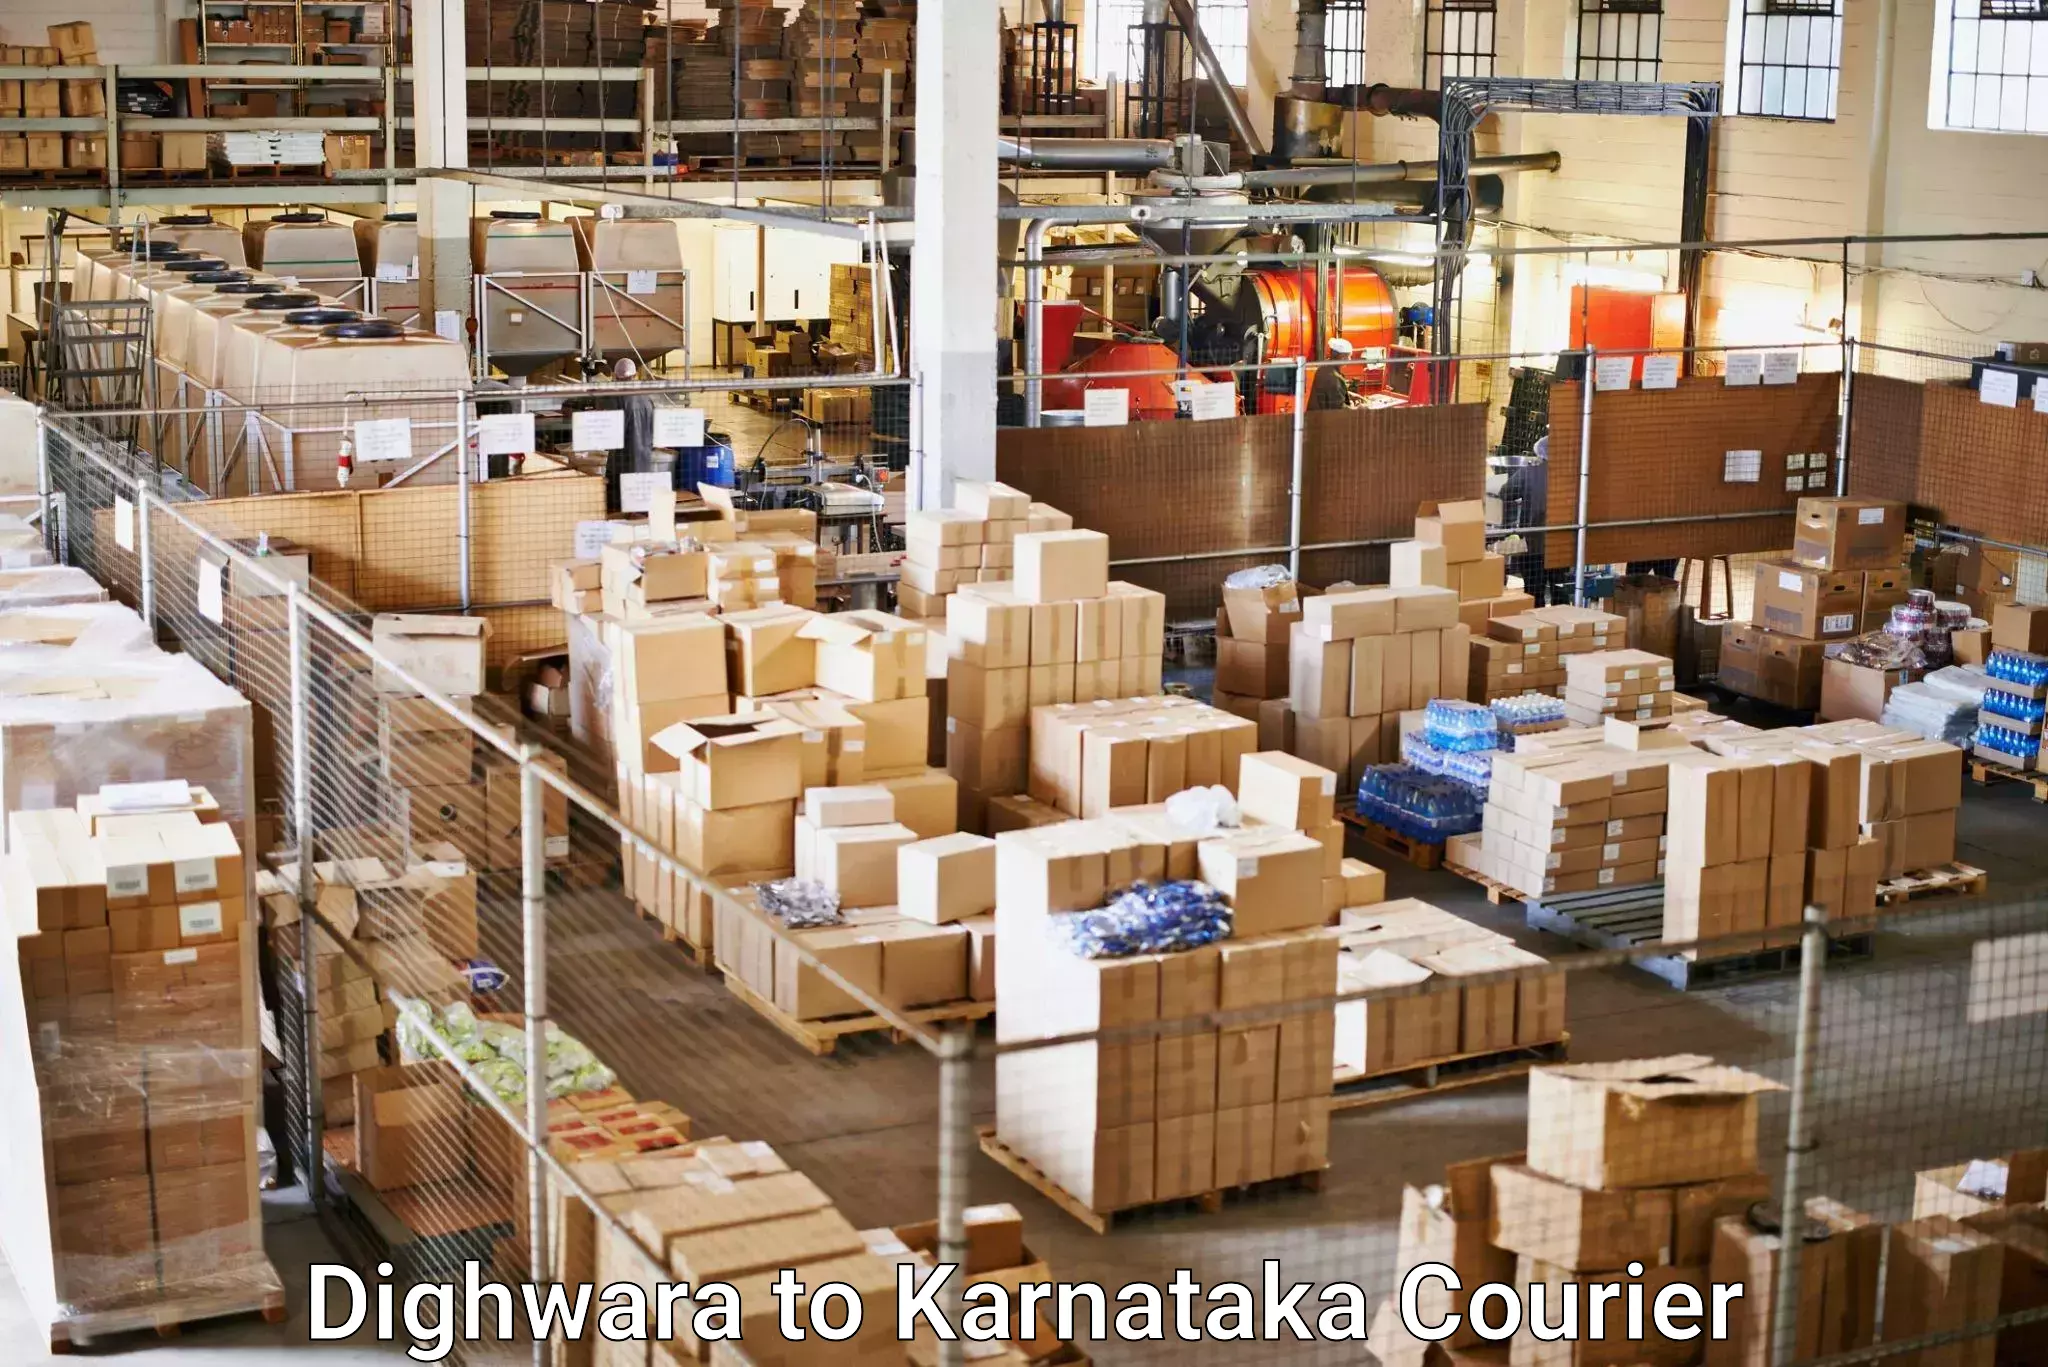 Multi-carrier shipping Dighwara to Karnataka